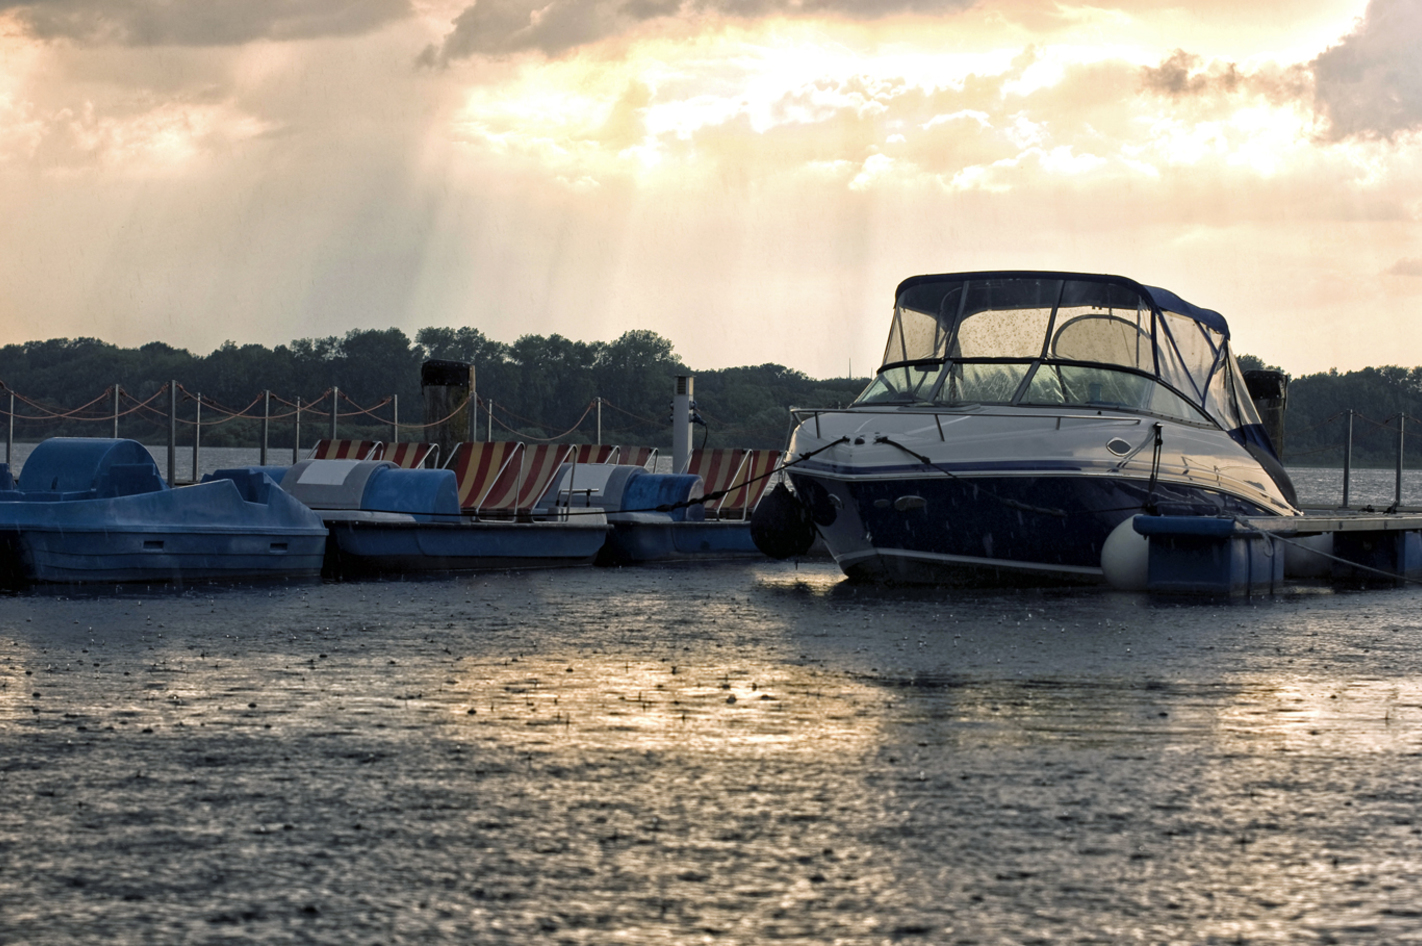 Bootfahren ohne Führerschein auf dem Müritzsee (1 Tag) in Waren (Müritz)